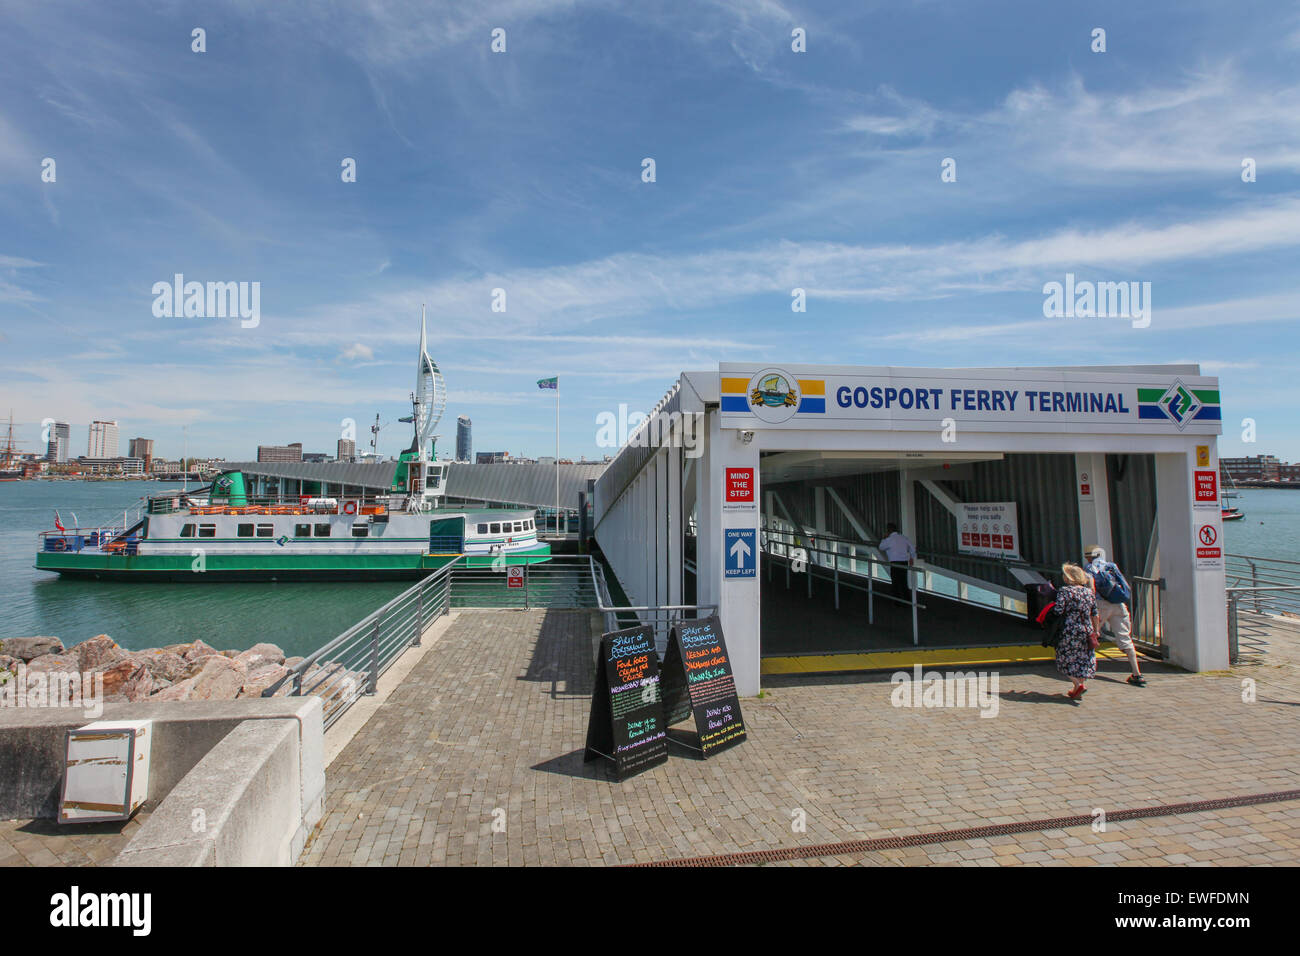 Gosport Ferry Terminal, Gosport, REINO UNIDO Foto de stock